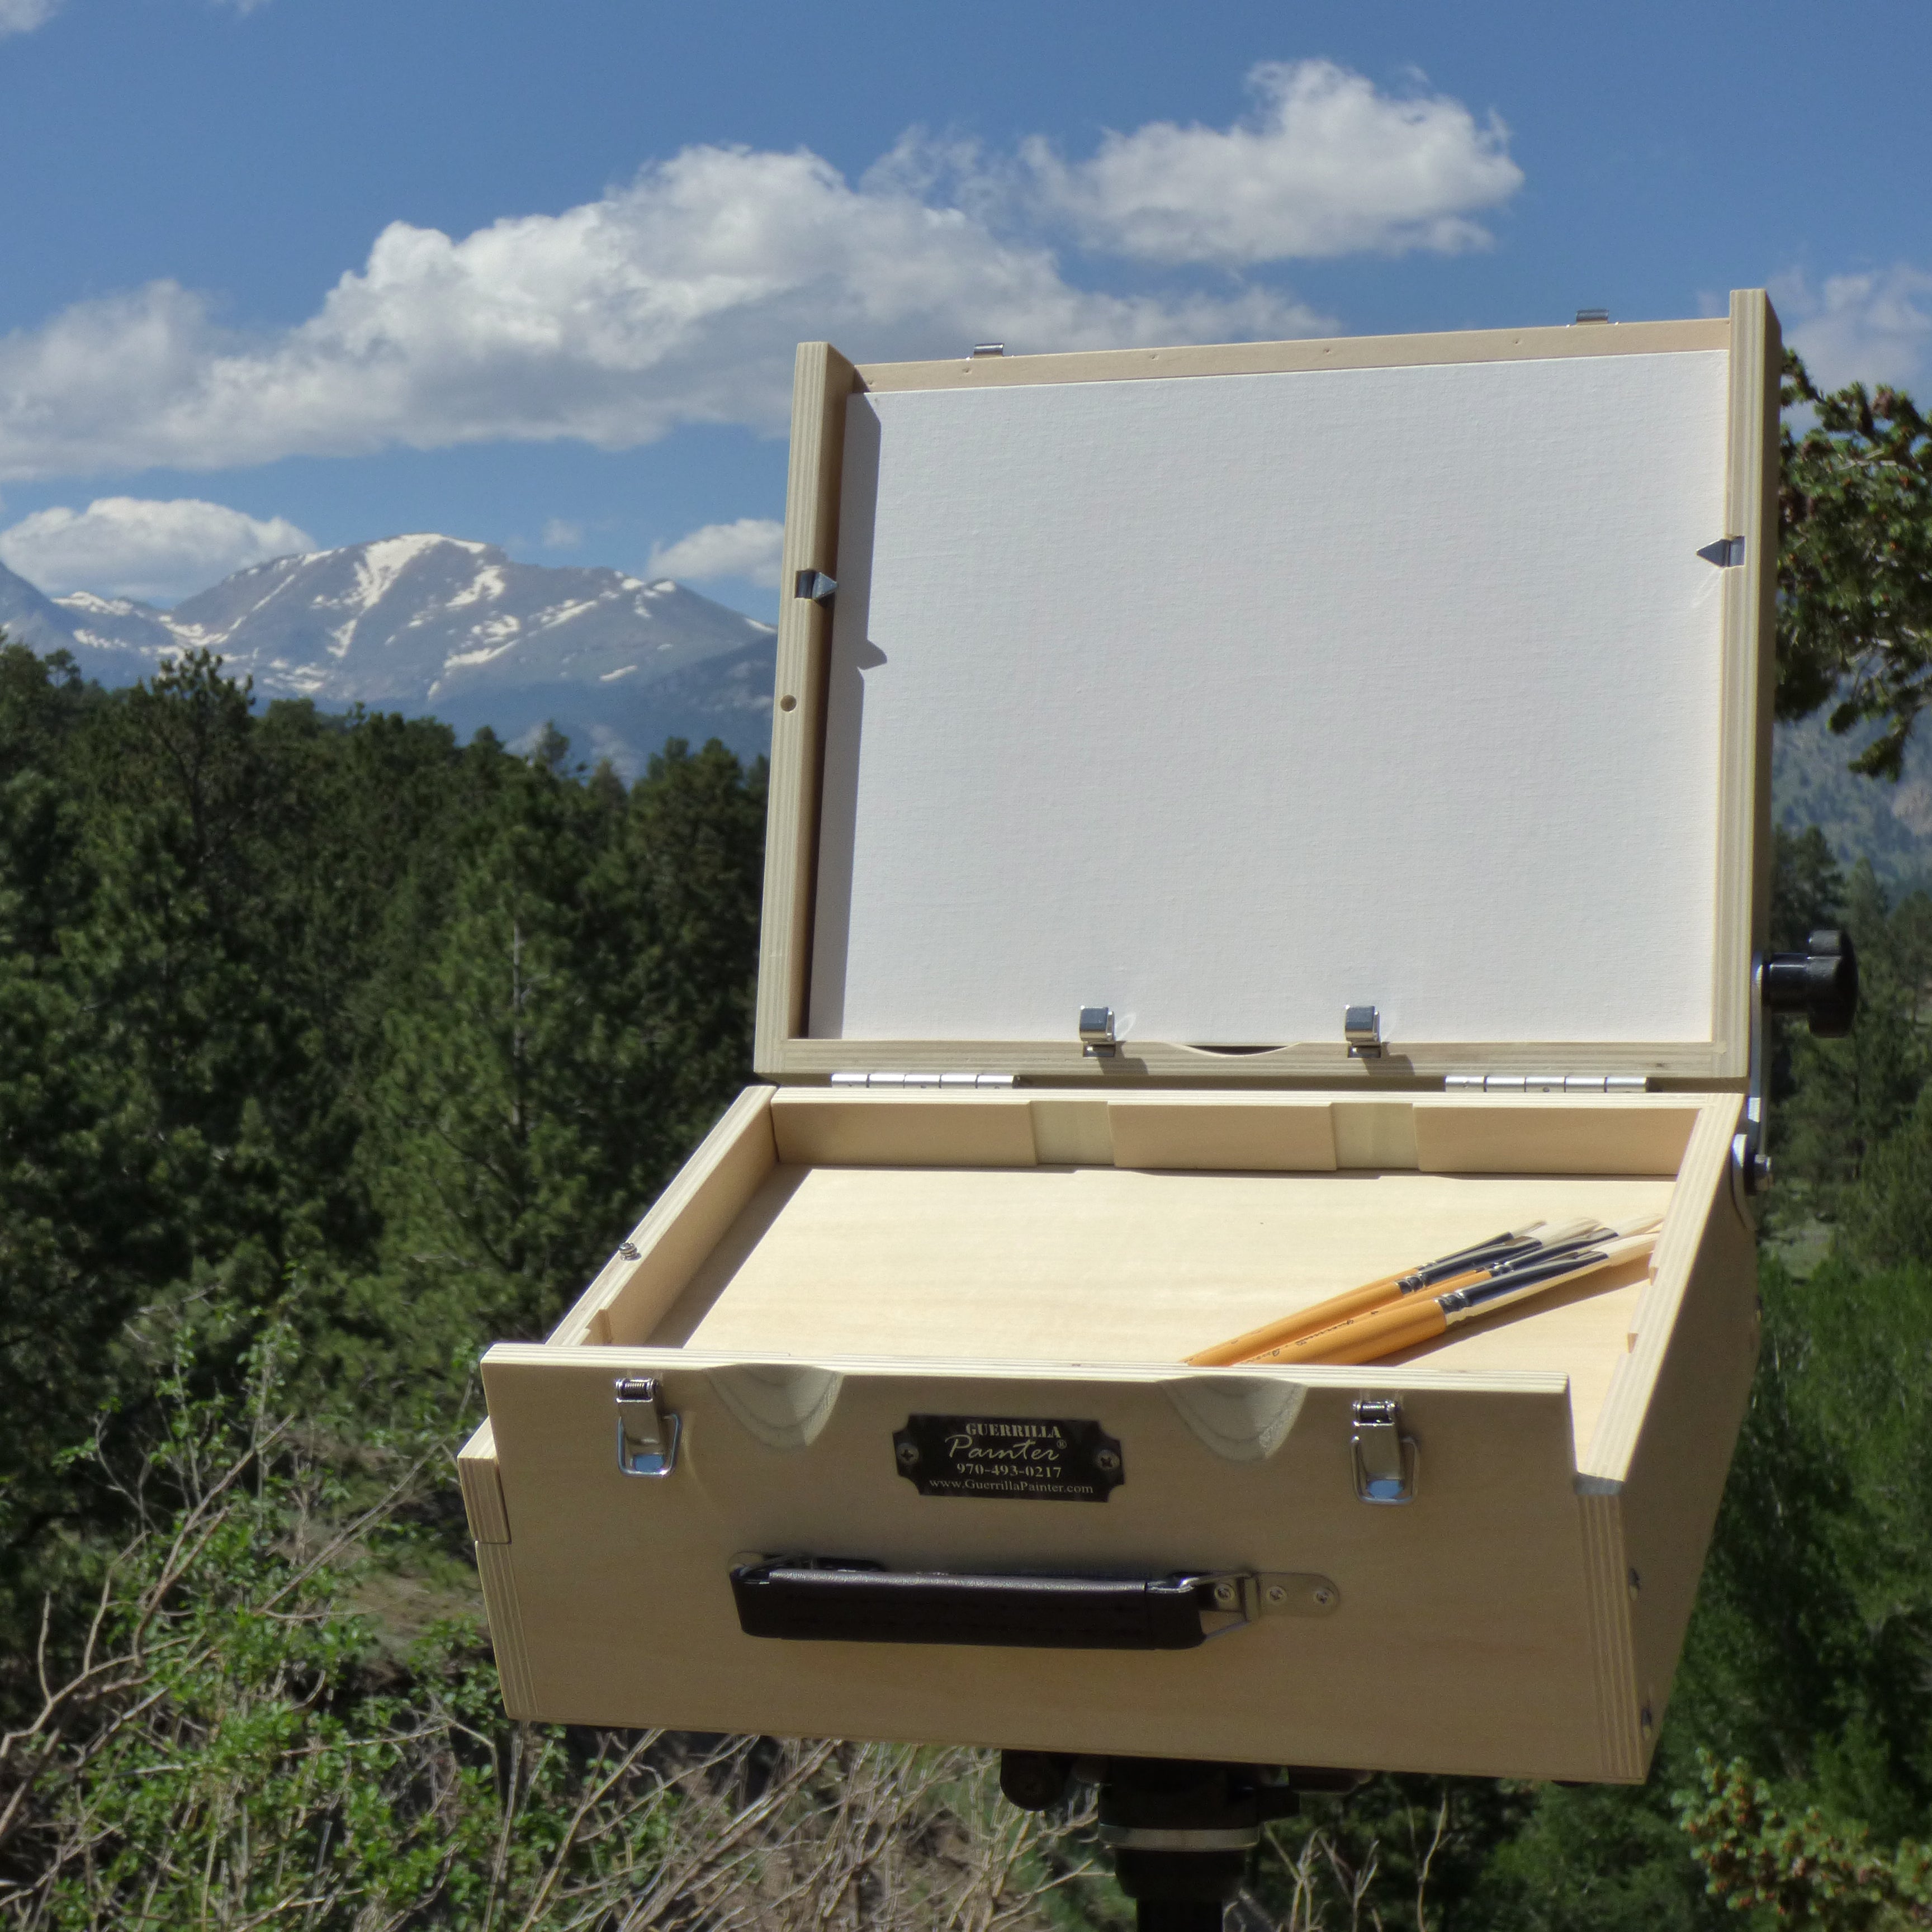 11 x 14 Yellowstone Pochade Box – Alla Prima Pochade